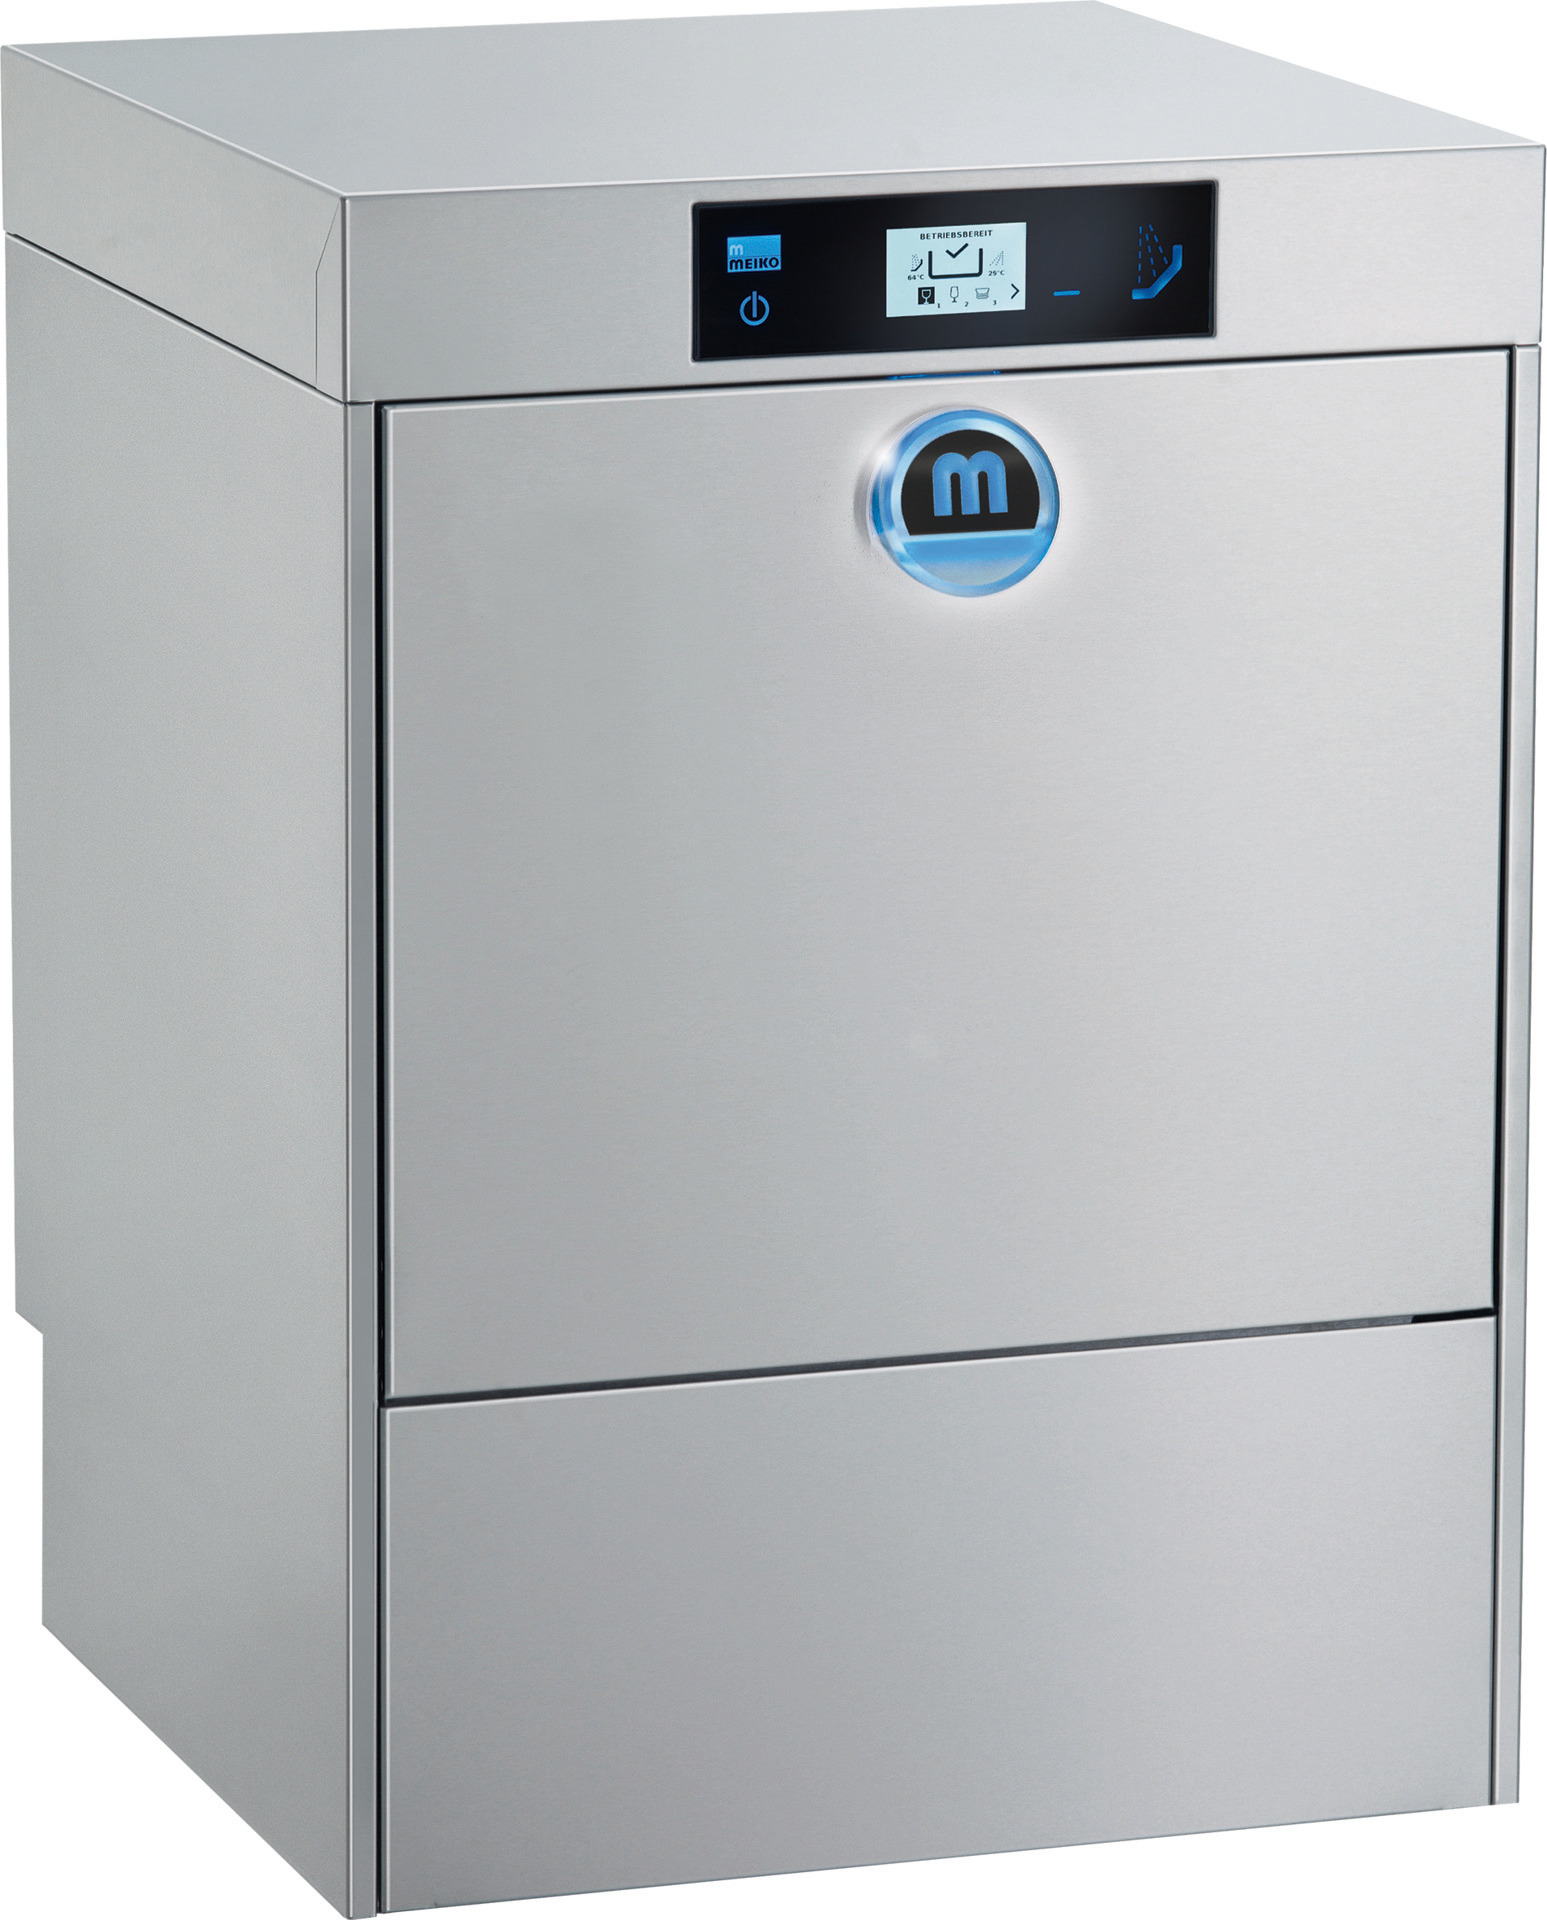 Gläserspülmaschine M-iClean UM / 500 x 500 mm / mit Sauglanze